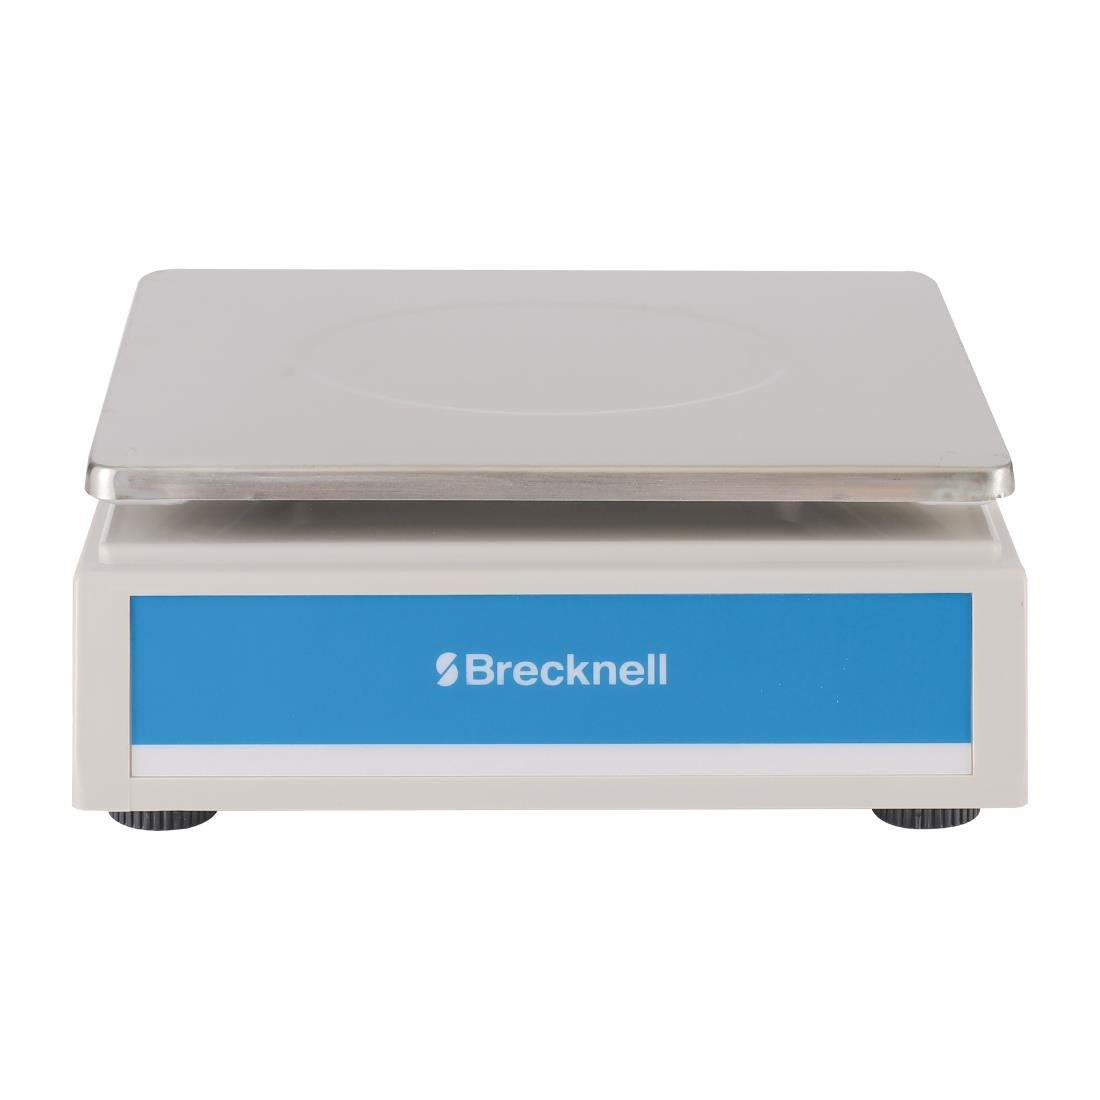 Brecknell elektronische weegschaal 6kg